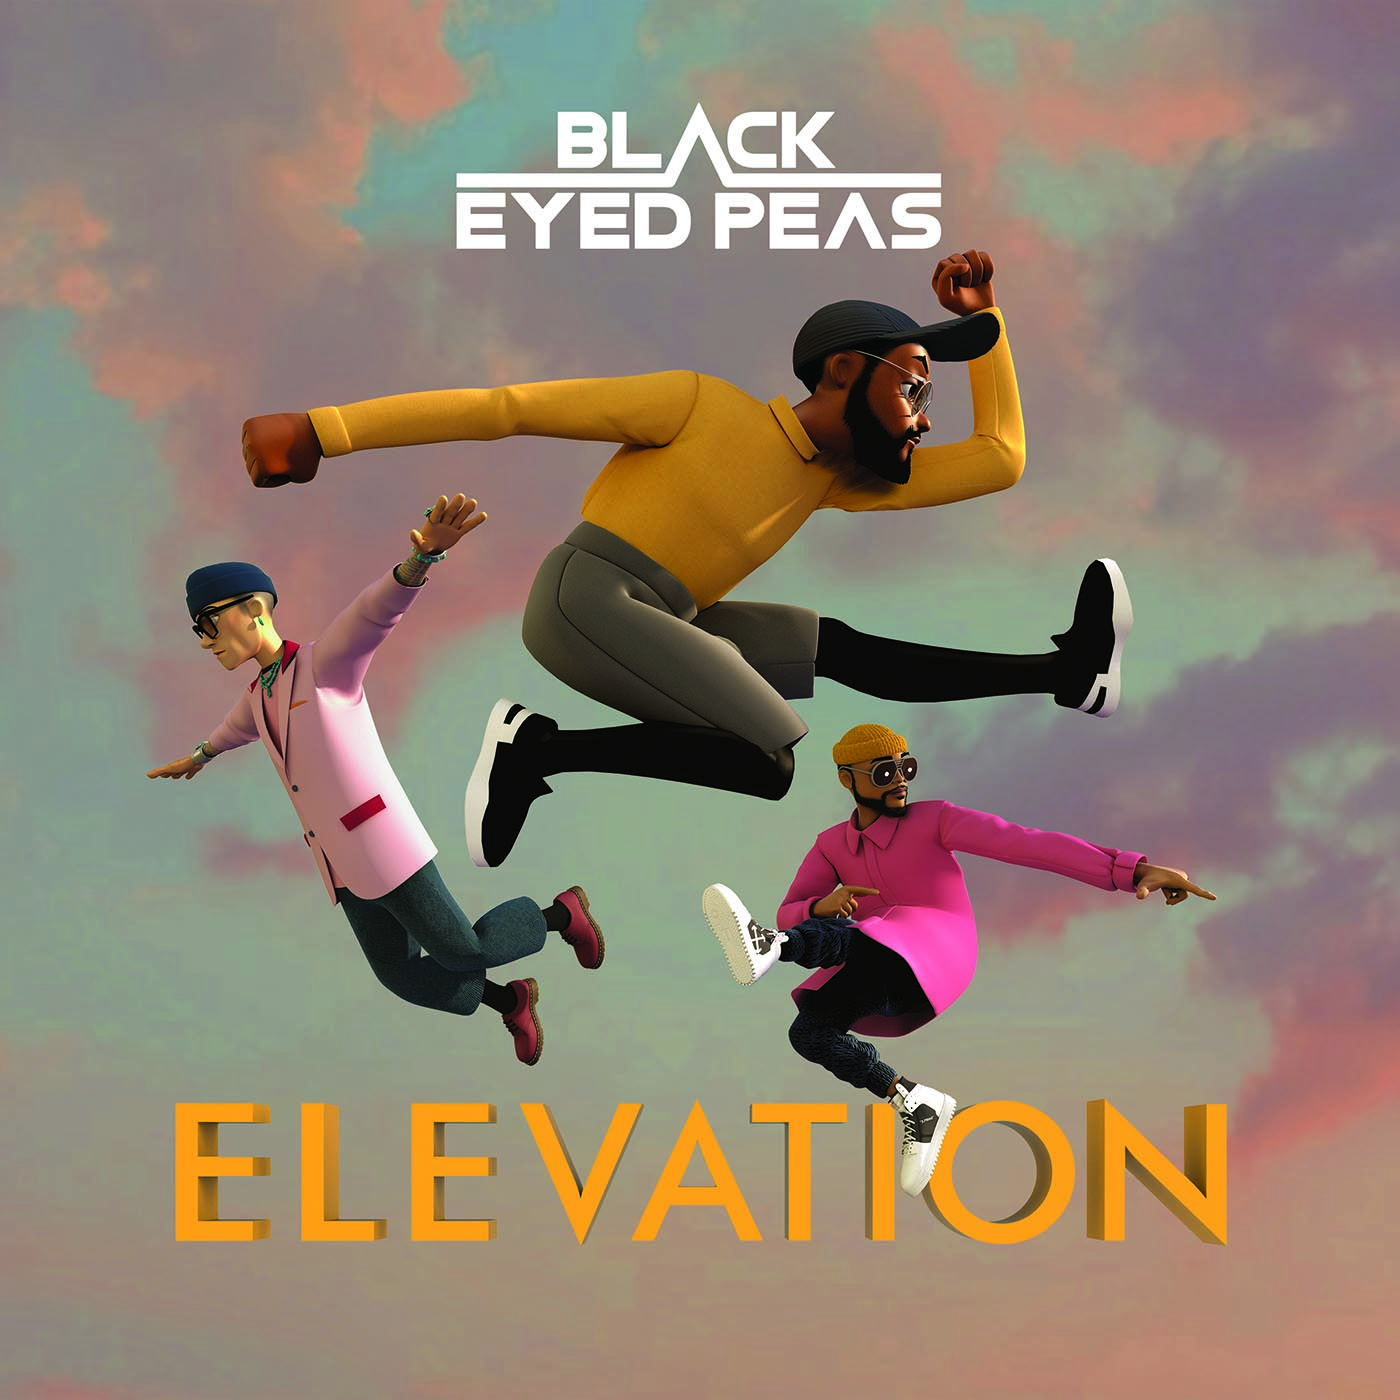 BLACK EYED PEAS presentan su nuevo álbum “Elevation”